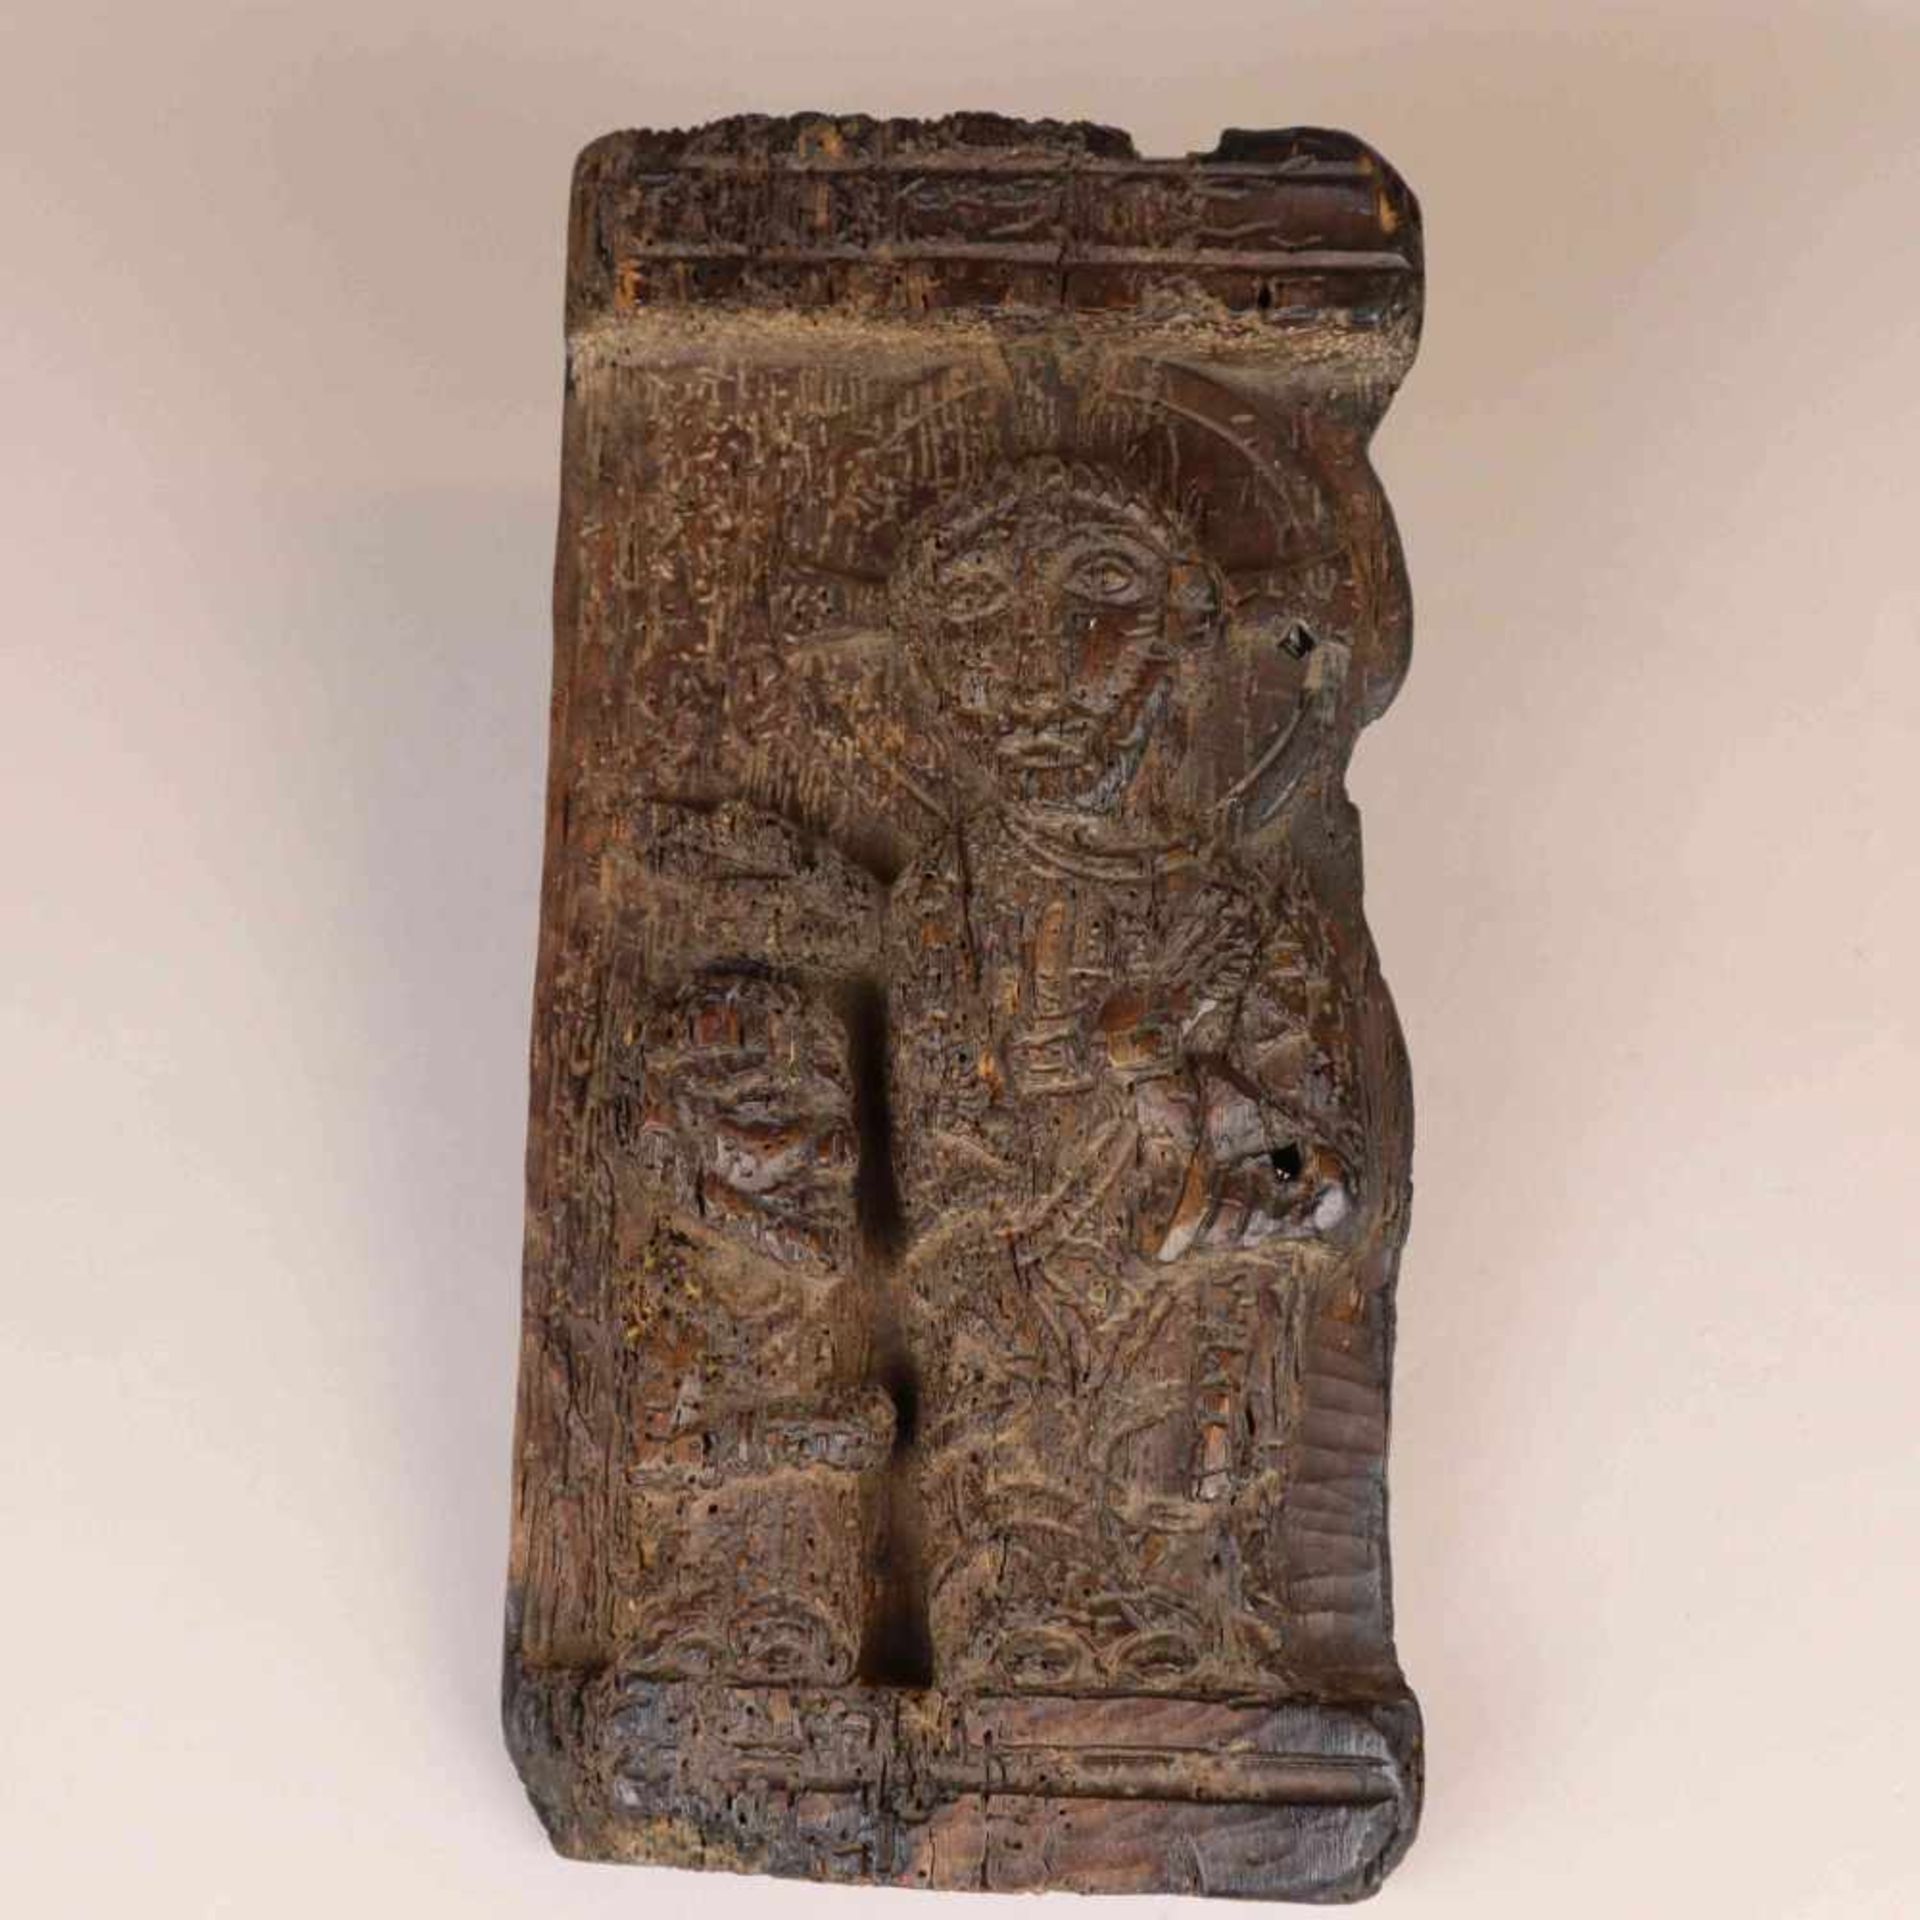 Alte Holzschnitzerei "Taufe Jesu" - hochrechteckige Holzplatte mit Relief, darauf Johannes der